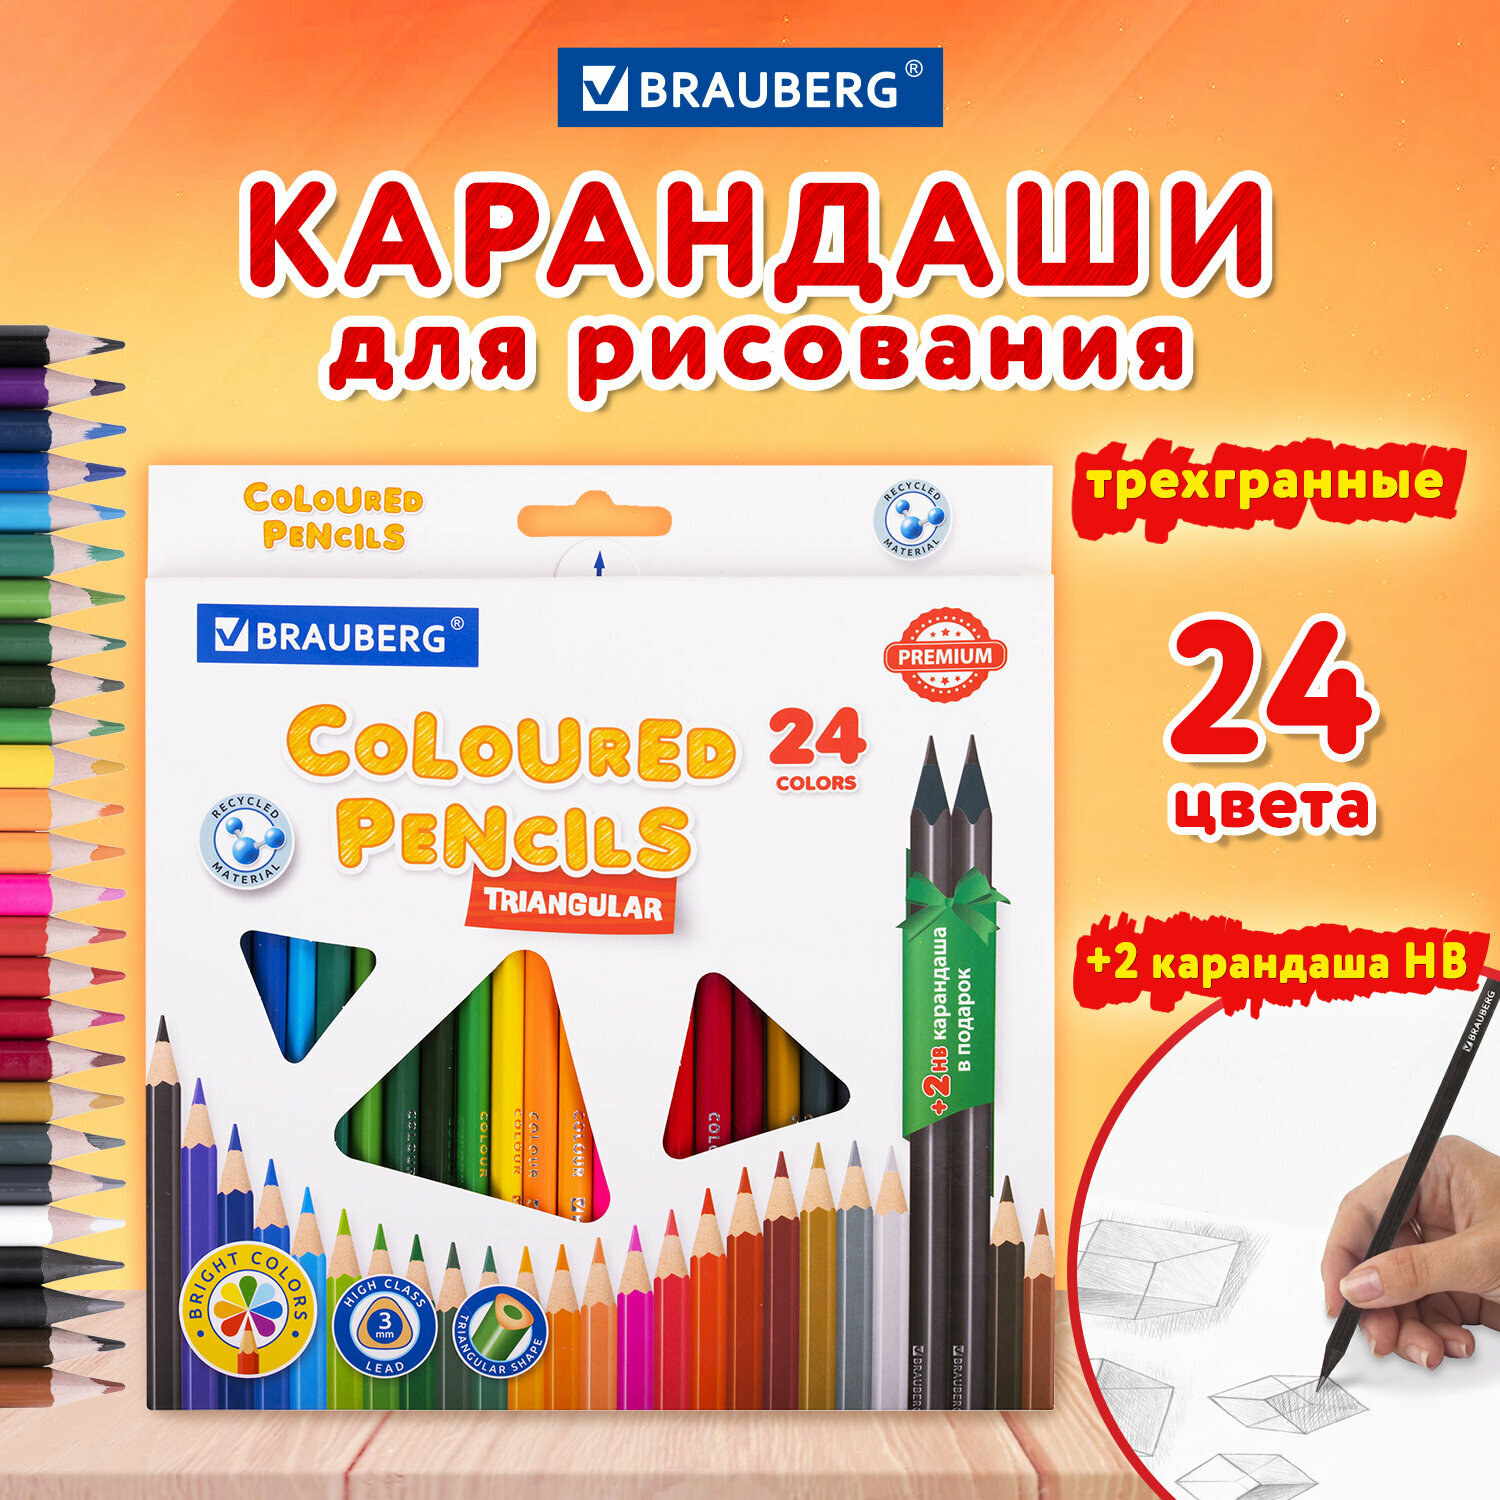 Карандаши цветные художественные для рисования пластиковые Brauberg Premium 24 цвета 2 ч гр карандаша, трехгранный корпус, грифель 3 мм, 181937